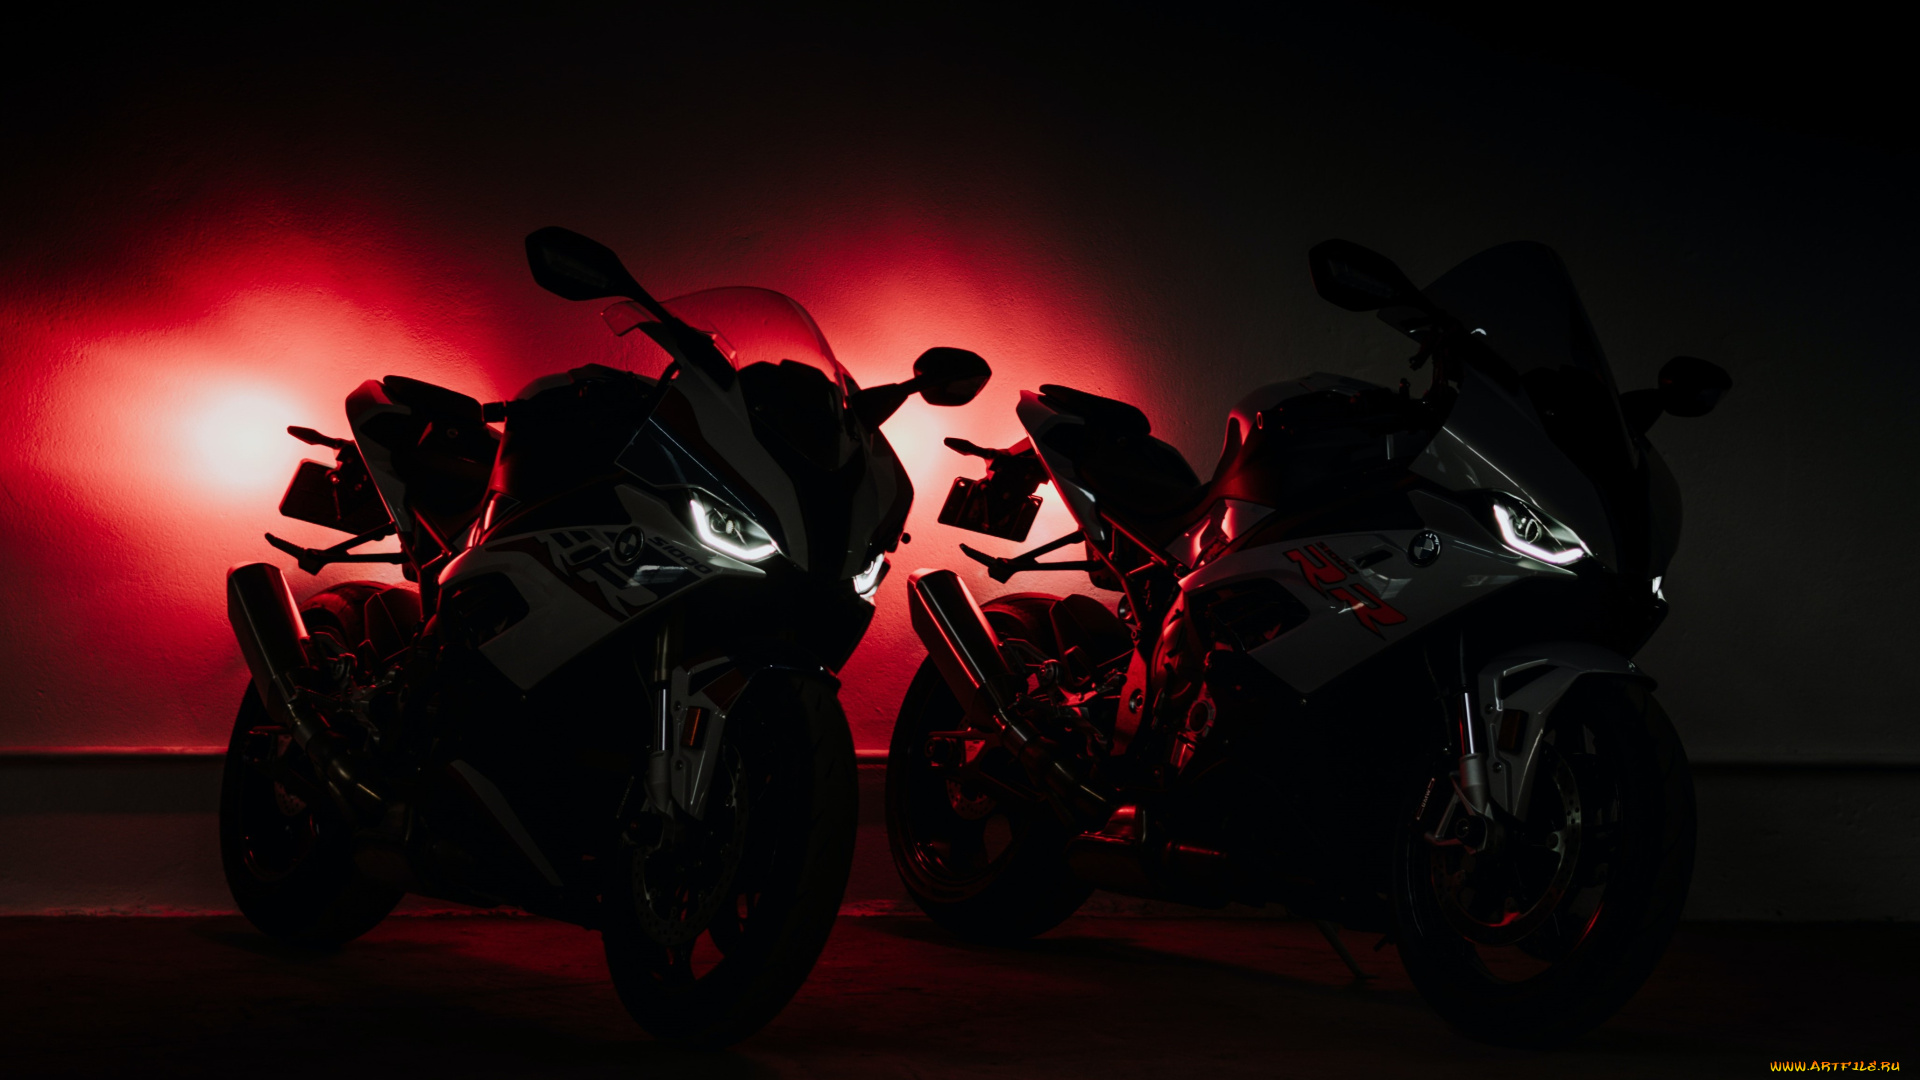 мотоциклы, bmw, light, darkness, s1000rr, motocycles